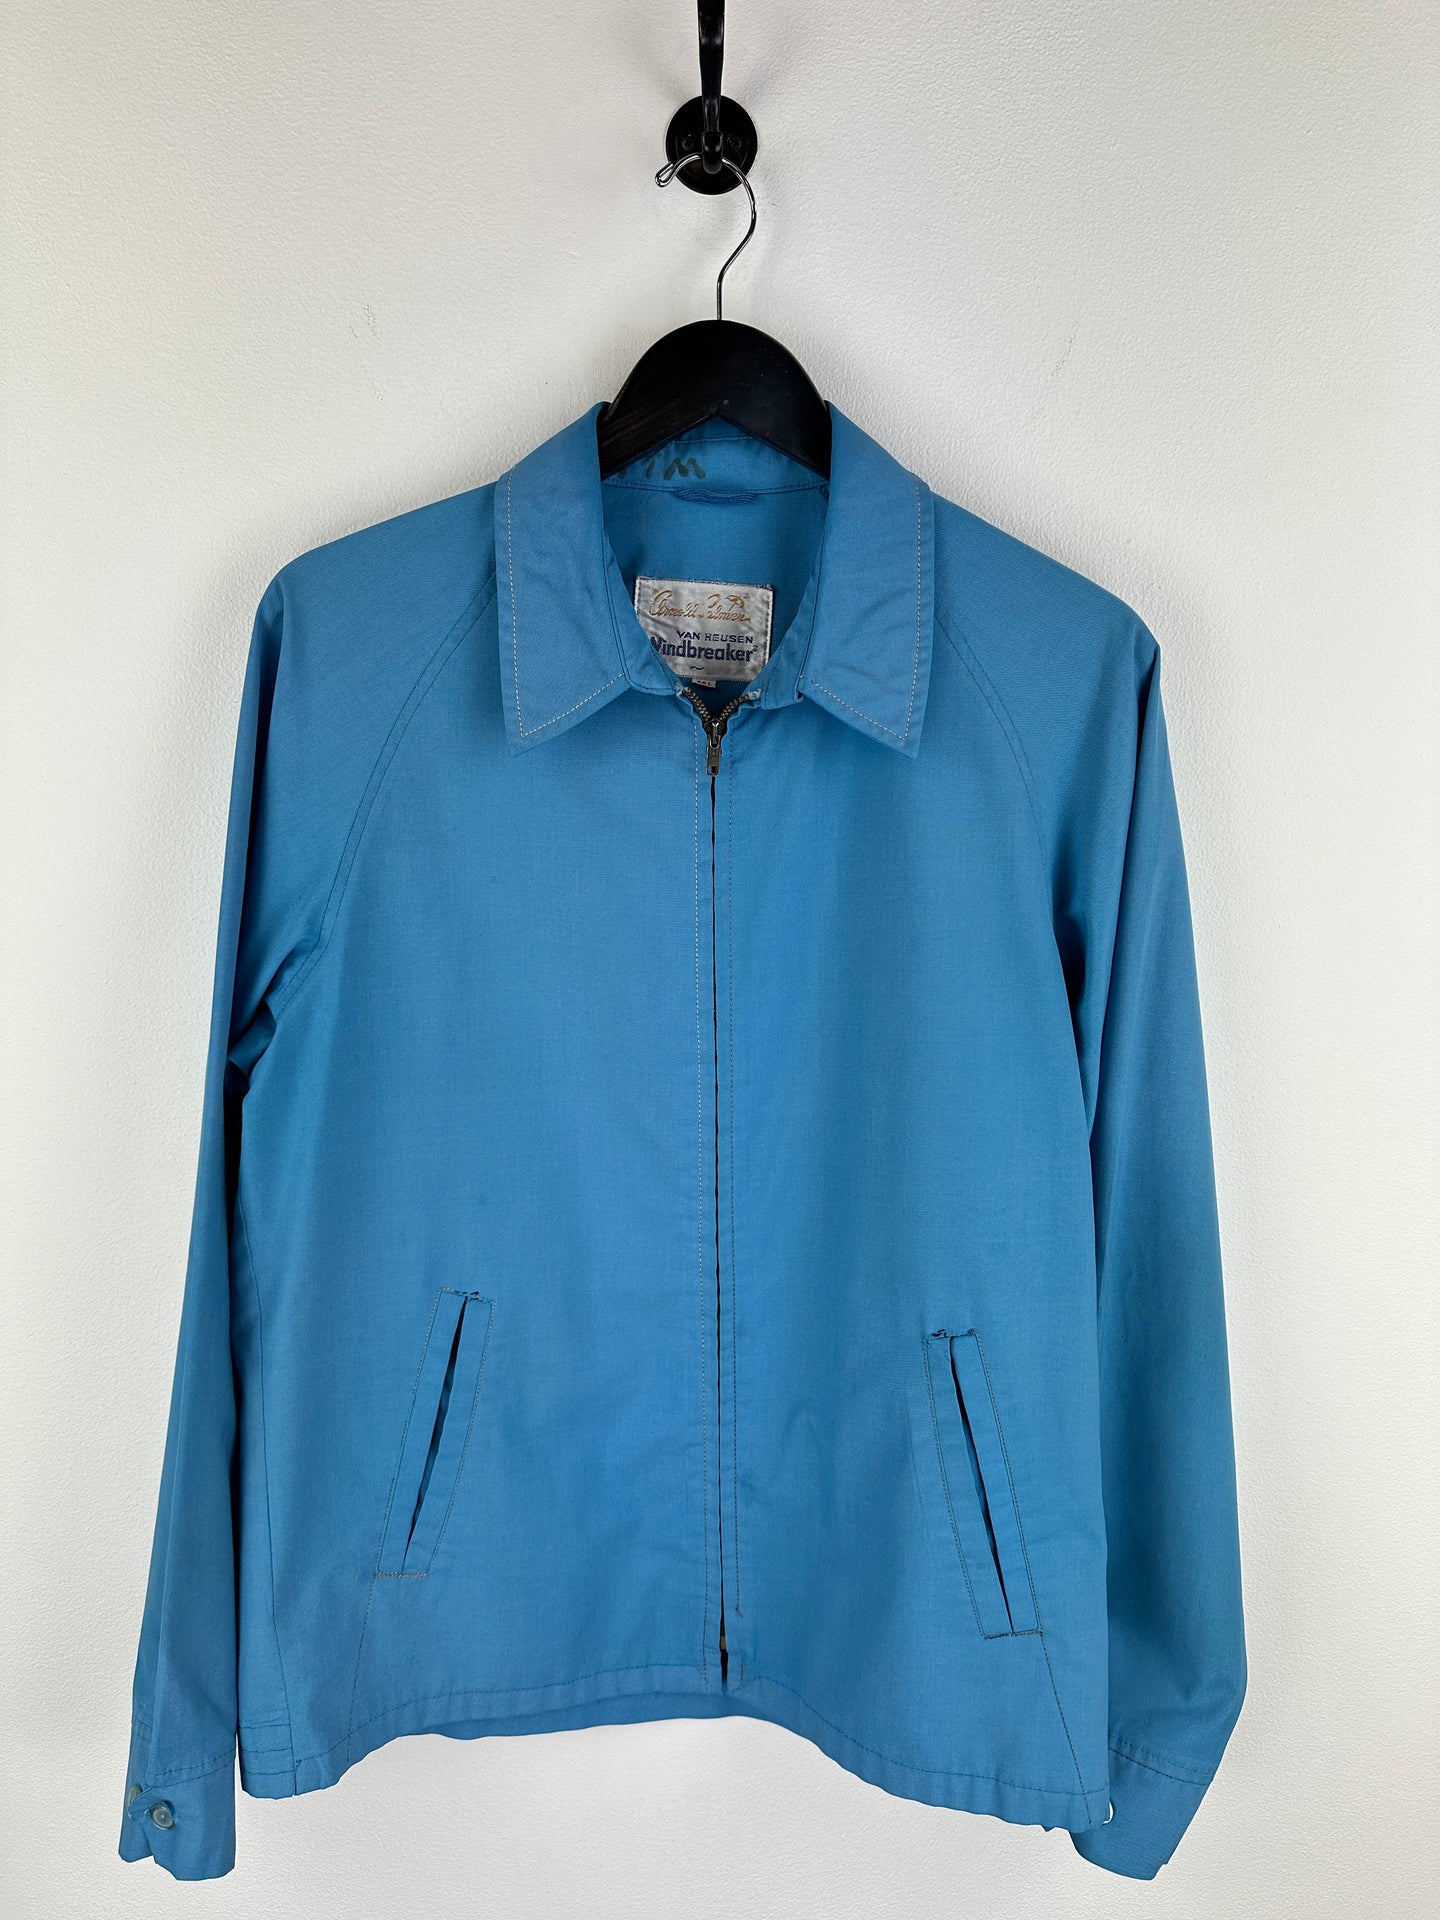 Vintage Arnold Palmer Jacket (L)